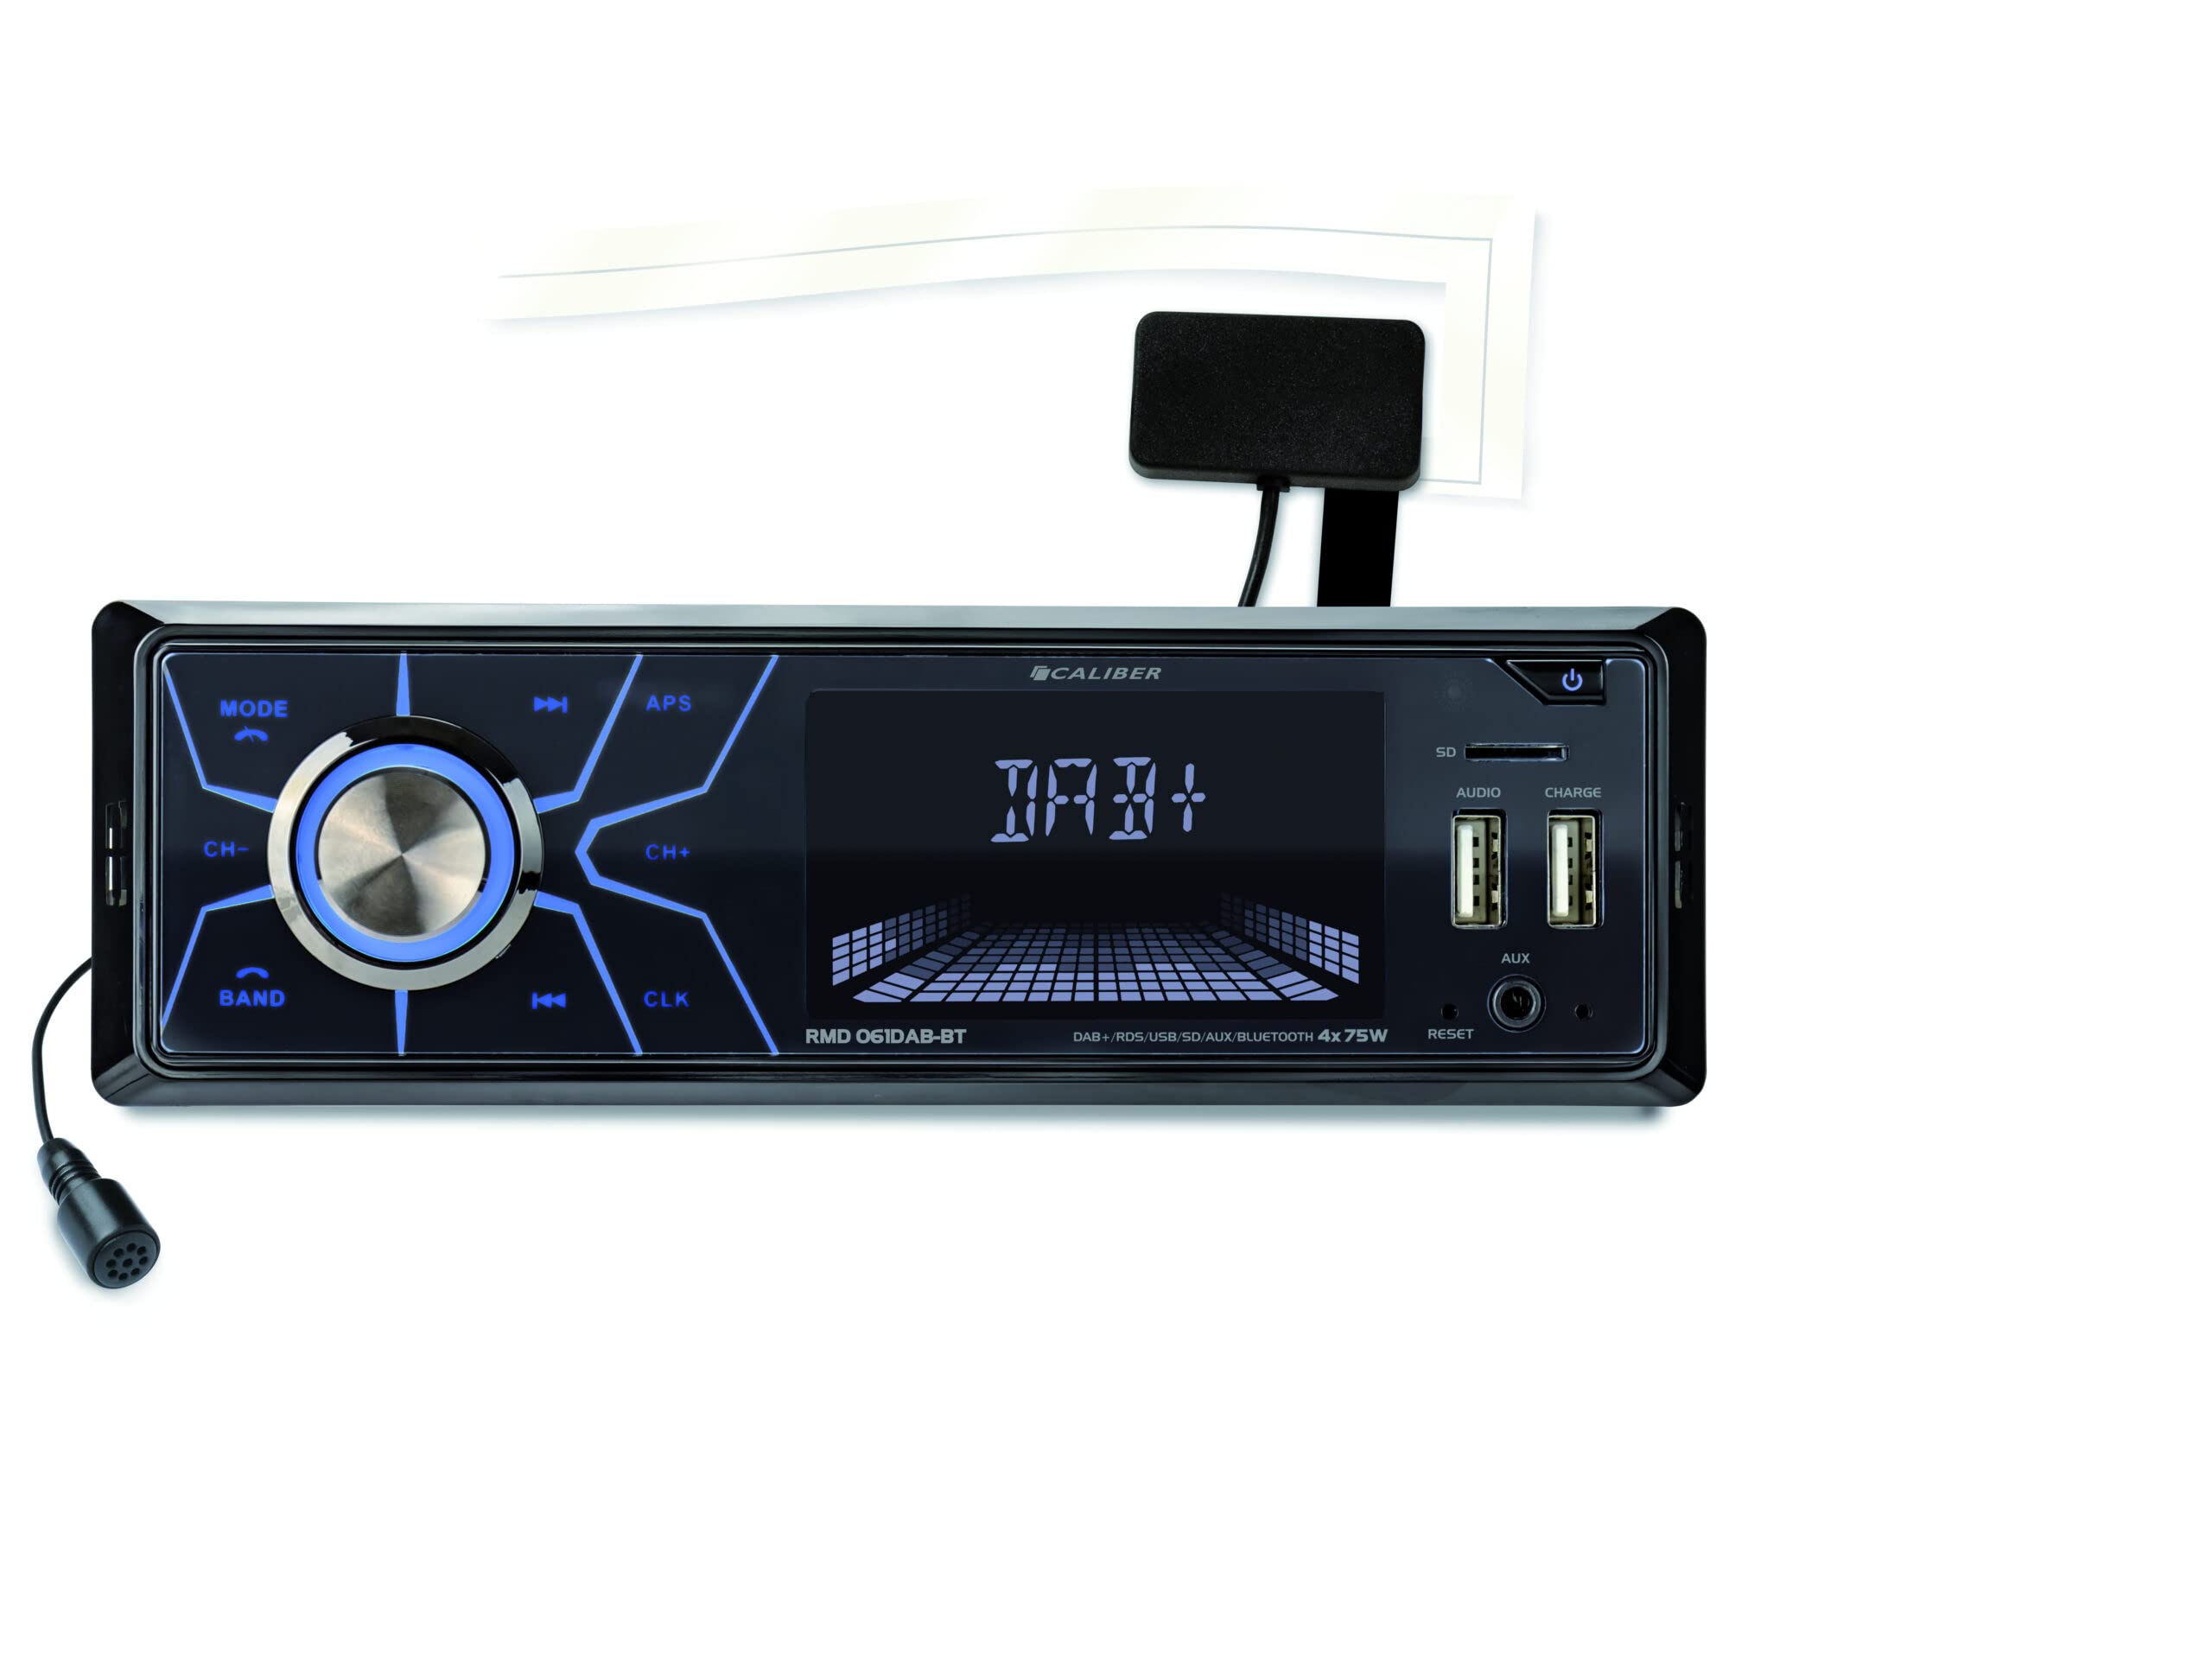 Caliber Autoradio - Auto Radio mit Bluetooth - Aux In - DAB - DAB Plus - FM - SD - USB - Einstellbare Tastenbeleuchtung - Mit Freisprechfunktion - 4X 75 Watt - Schwarz - 1 Din